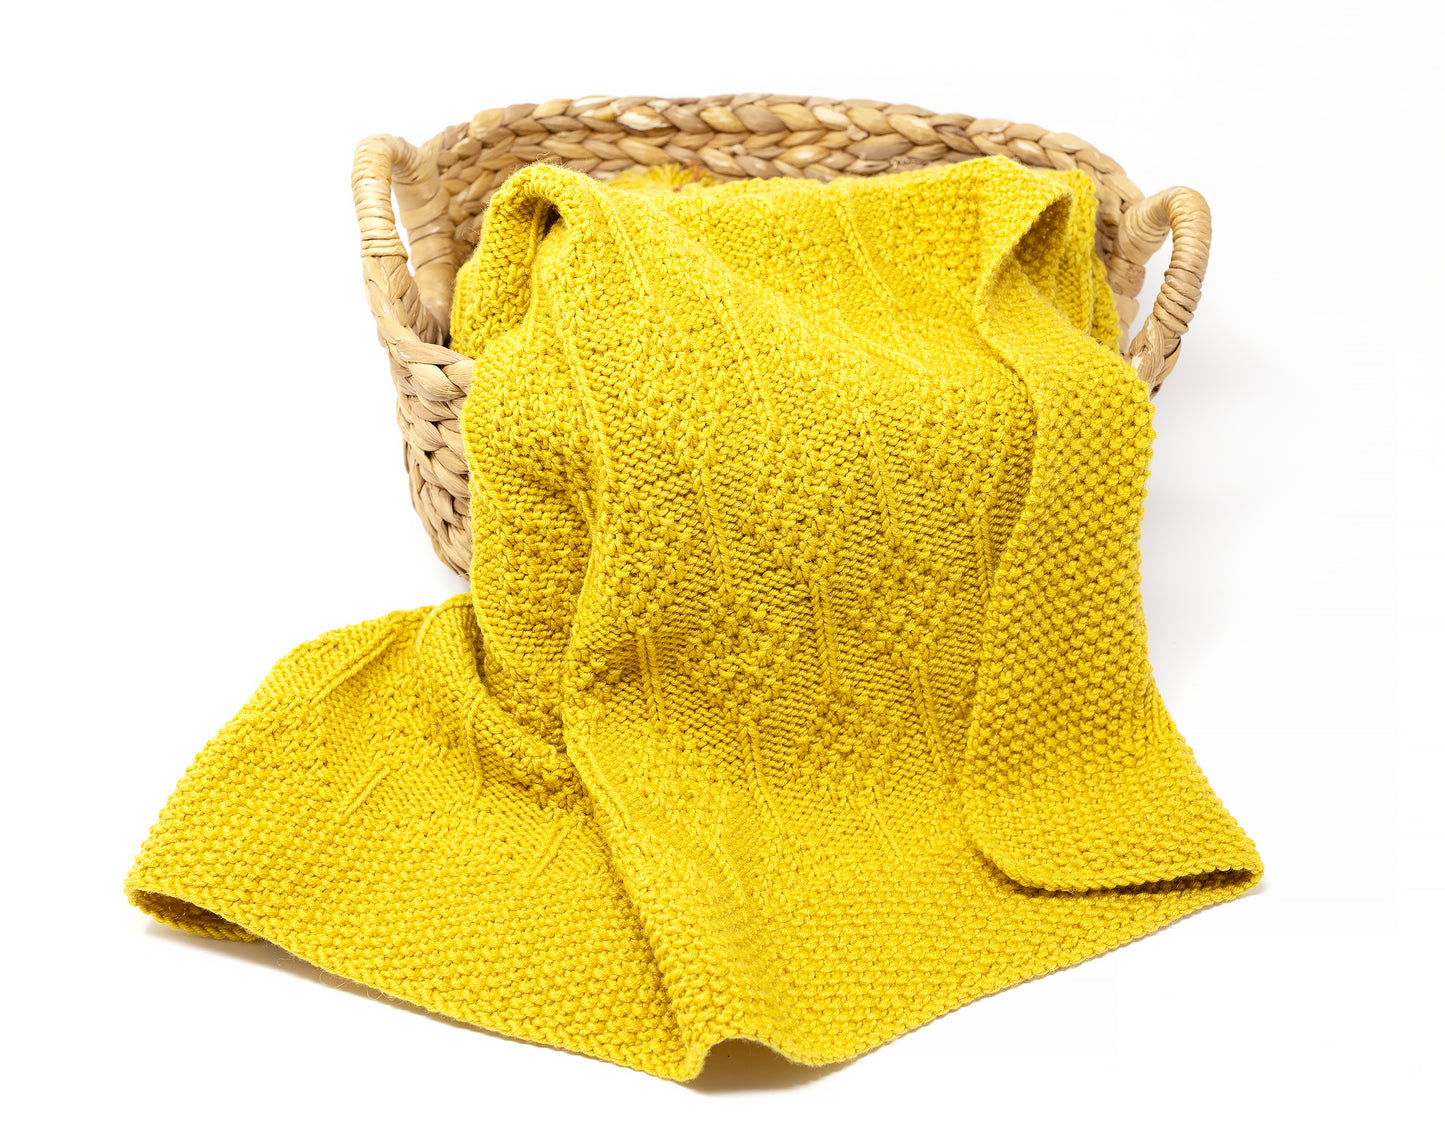 Yellow superwash merino wool DK yarn hand-knitted baby blanket in Diamonds knitting pattern